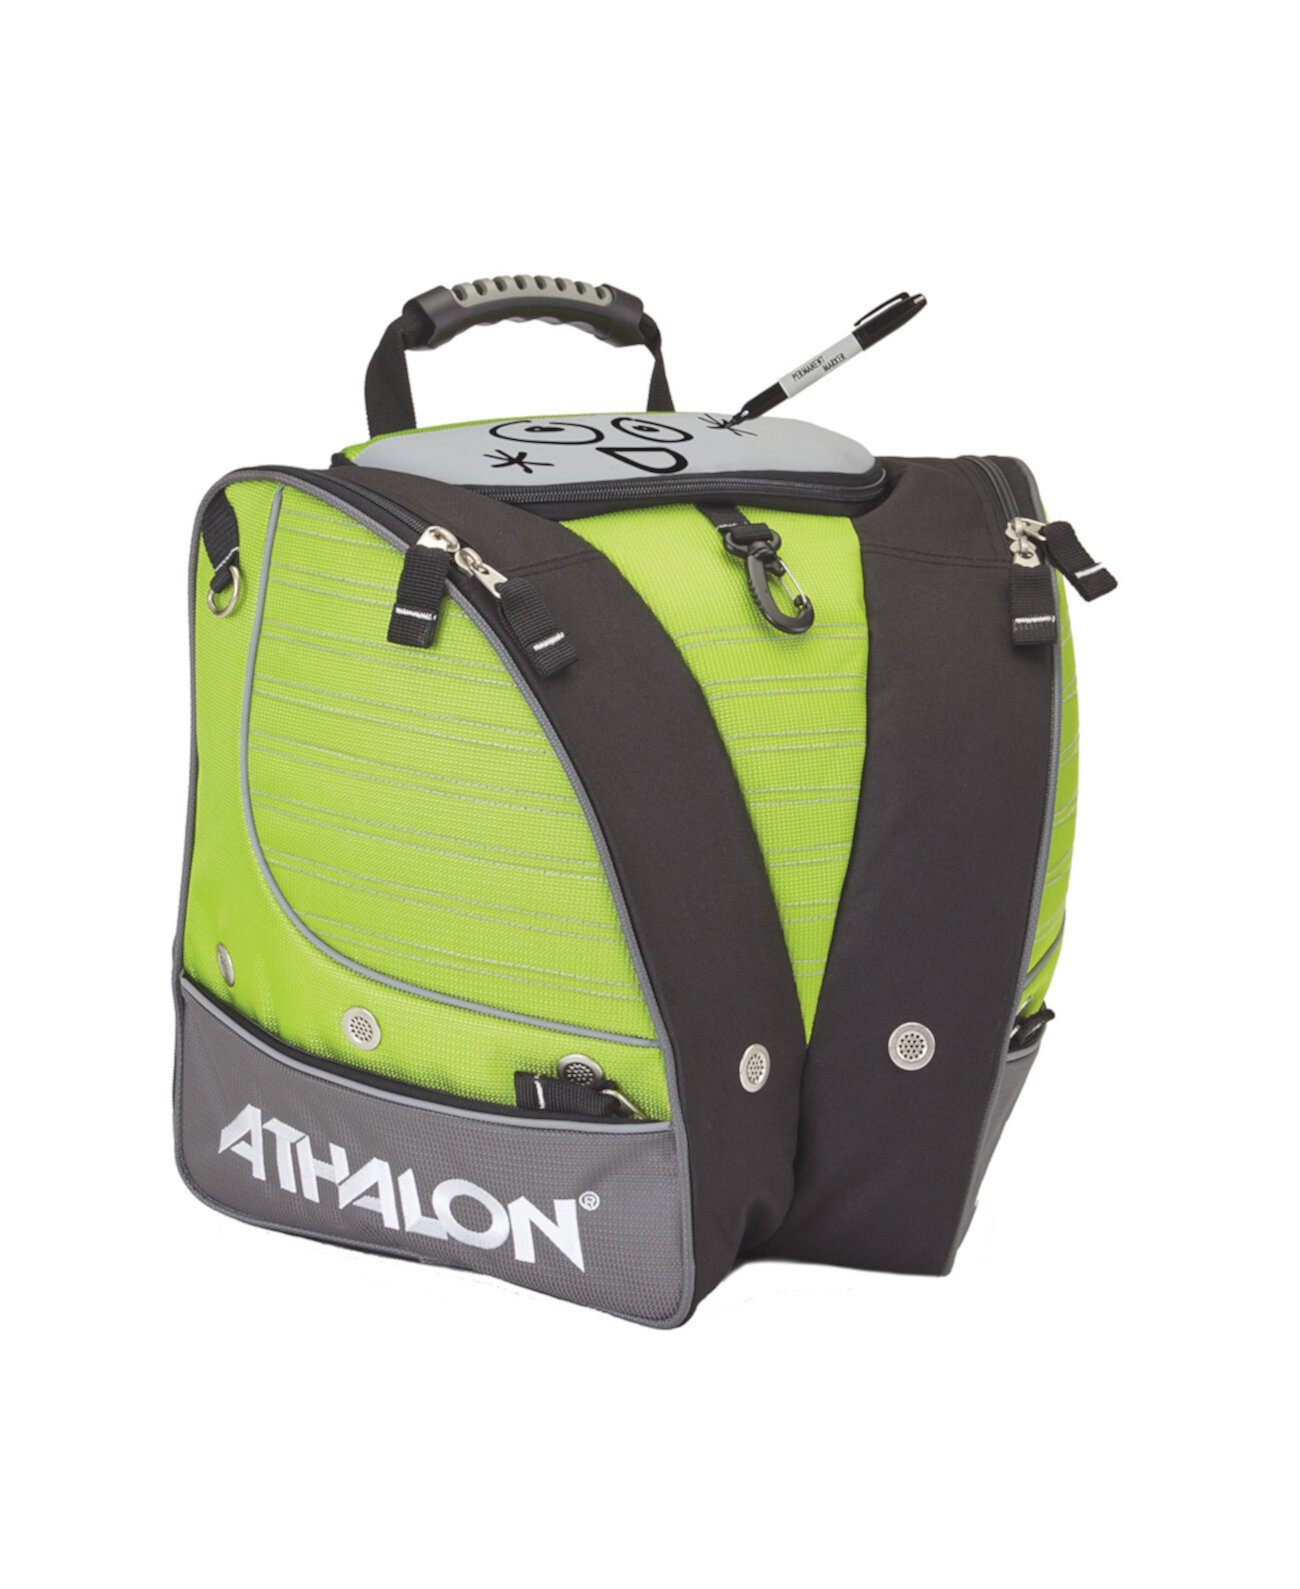 Персонализированная сумка для детских лыжных ботинок - рюкзак Athalon